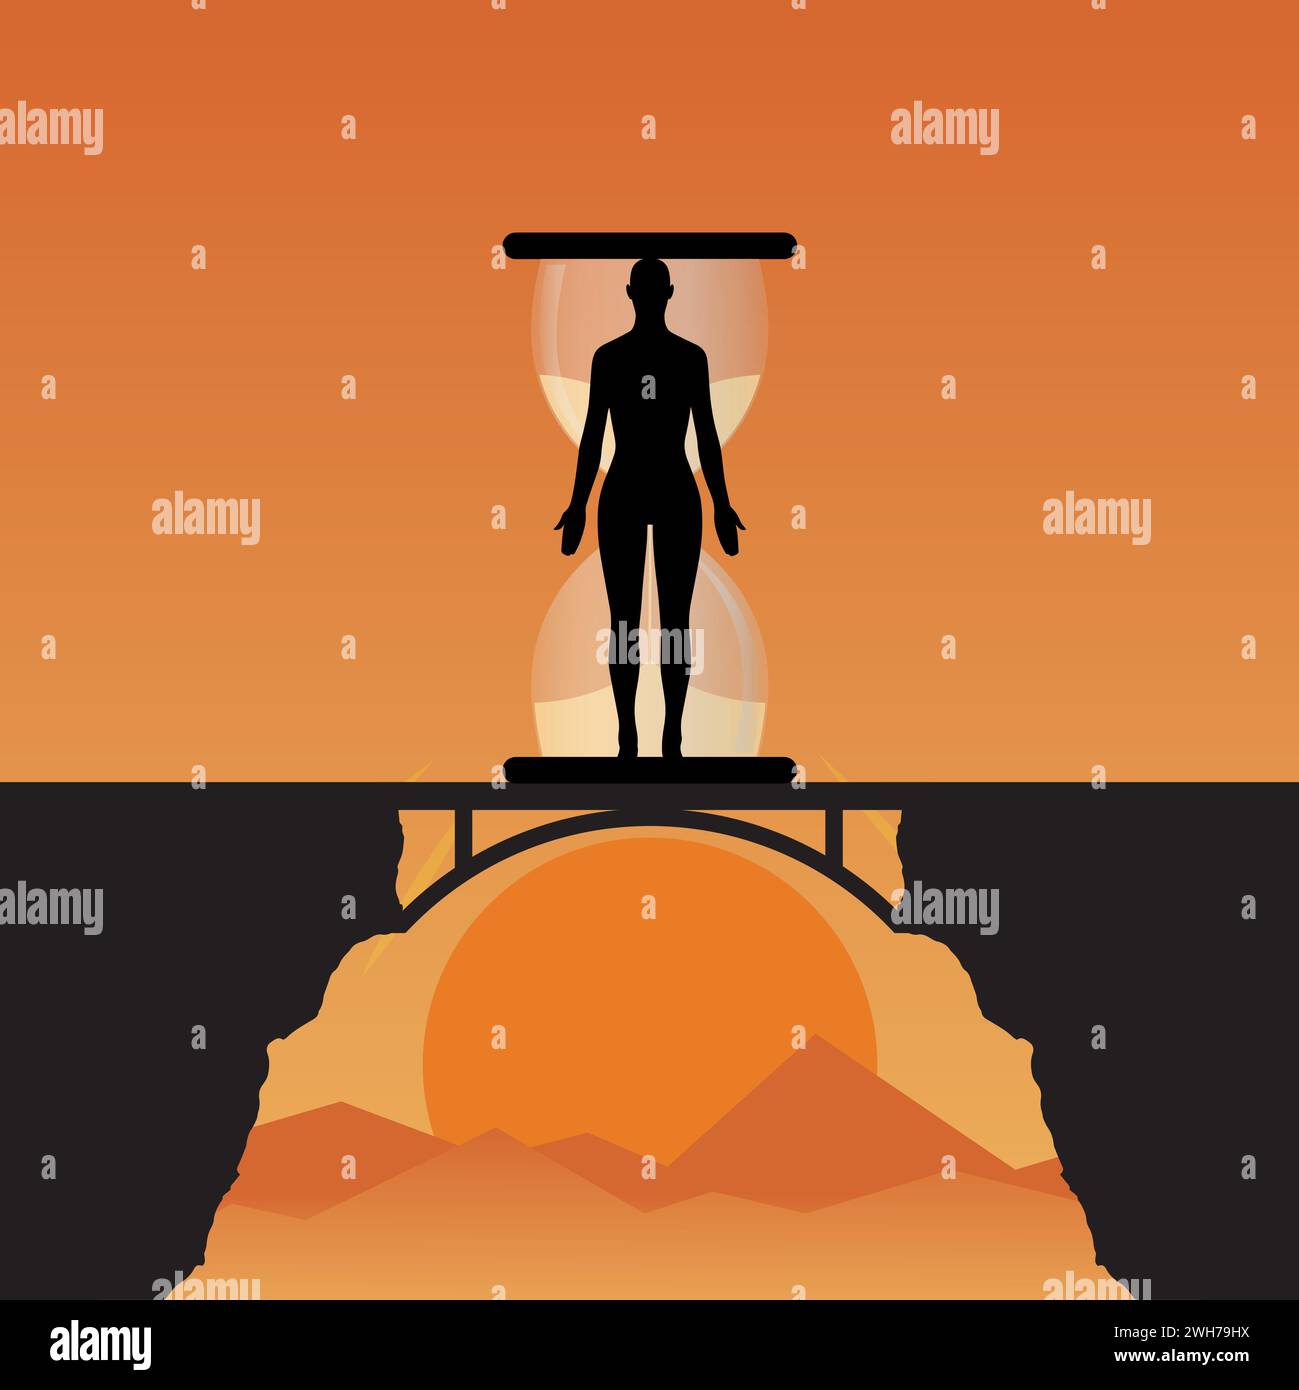 Silhouette d'une personne sur un pont avec un sablier derrière lui, concept de processus de vieillissement humain Illustration de Vecteur